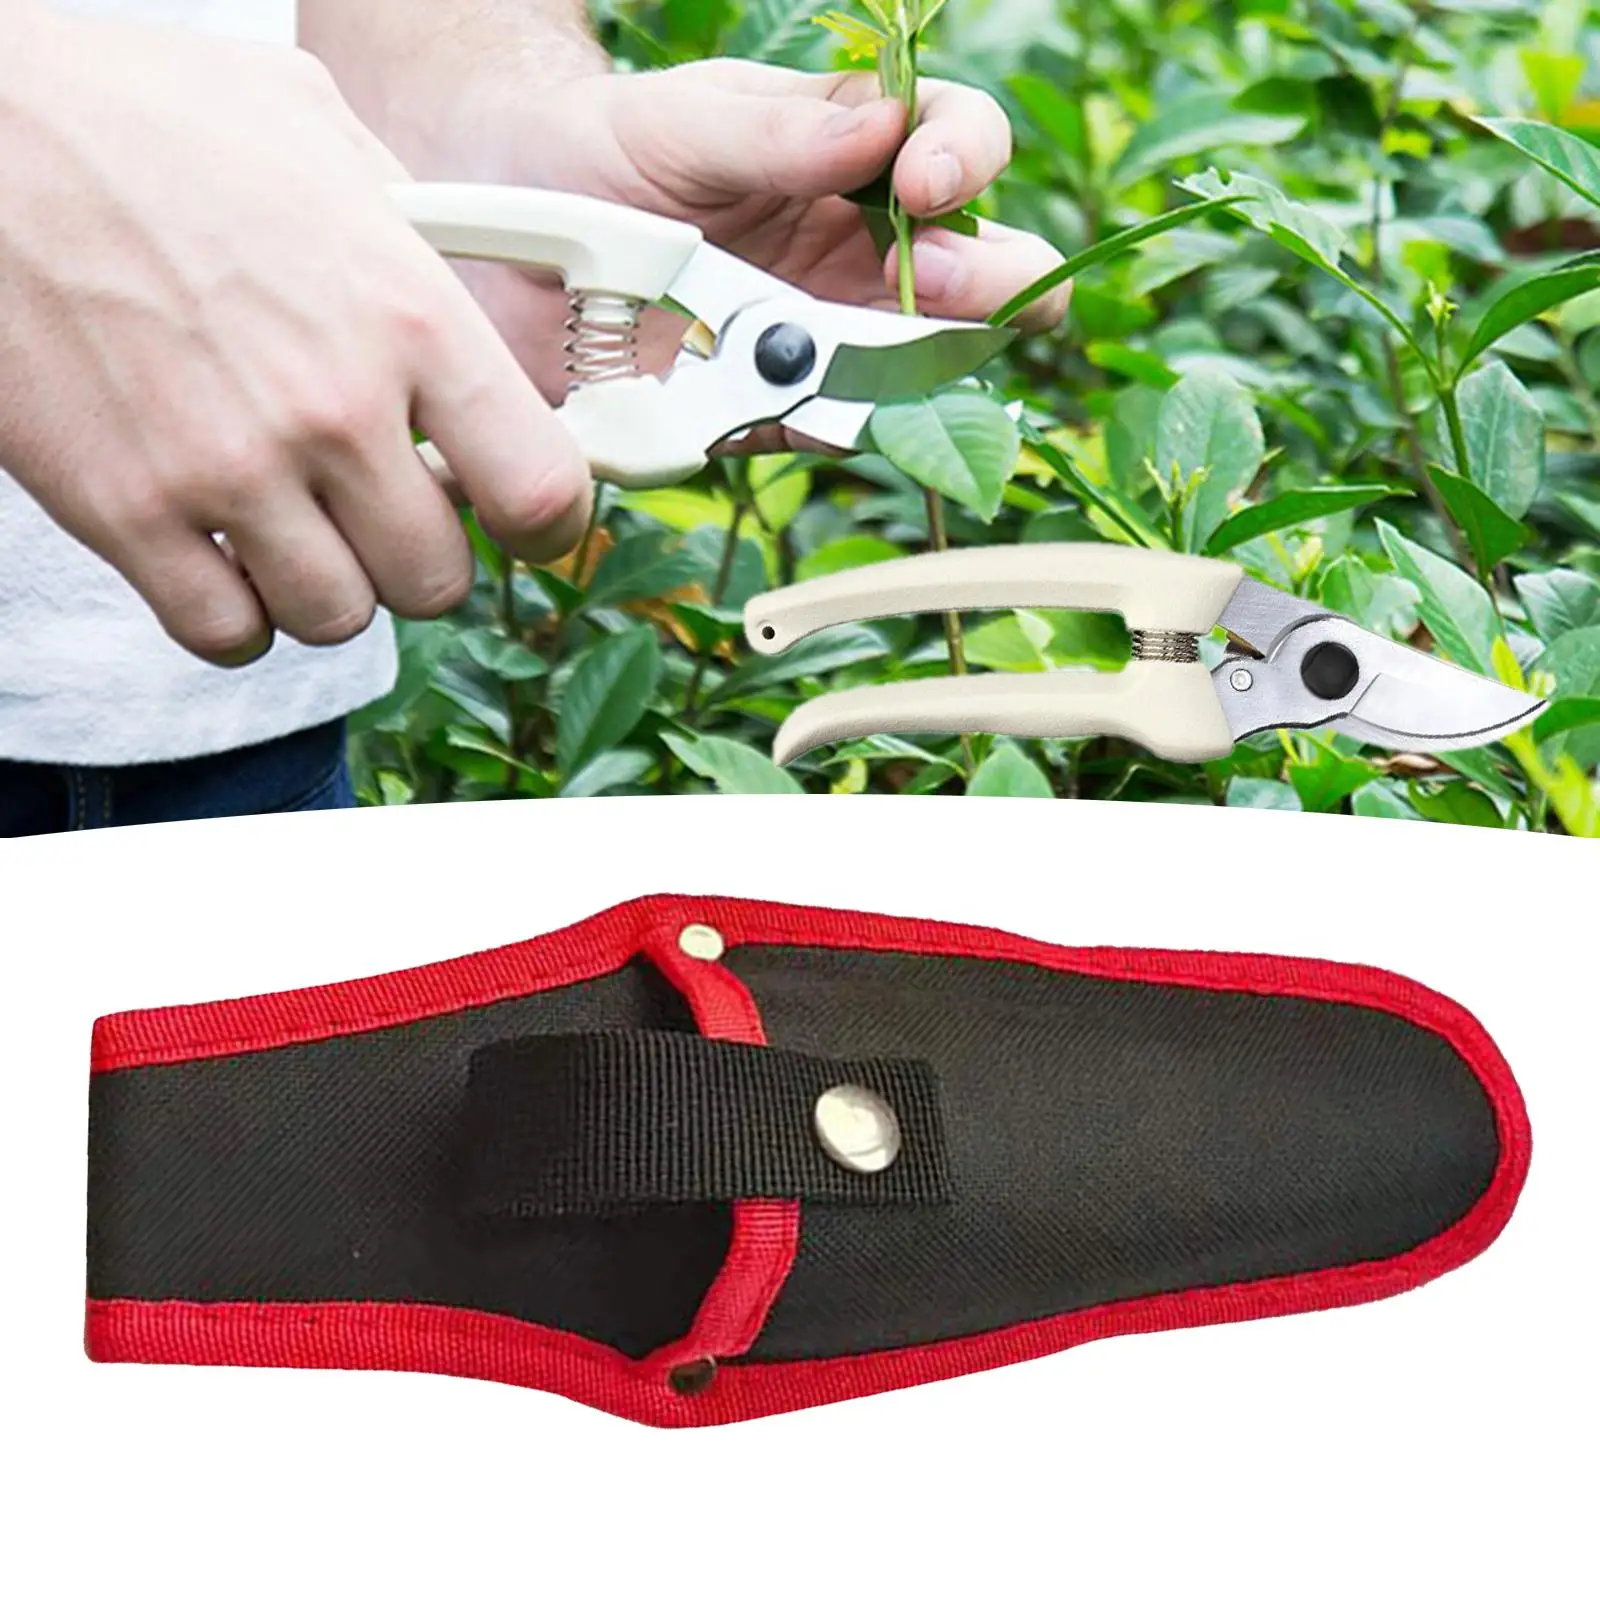 Tuval Pruner Kılıf Kompakt Pense Pruners Tutucu Aracı Kemer Aksesuar Aracı Kılıfları Bahçe Bıçağı Bitki Kesme kesme aletleri